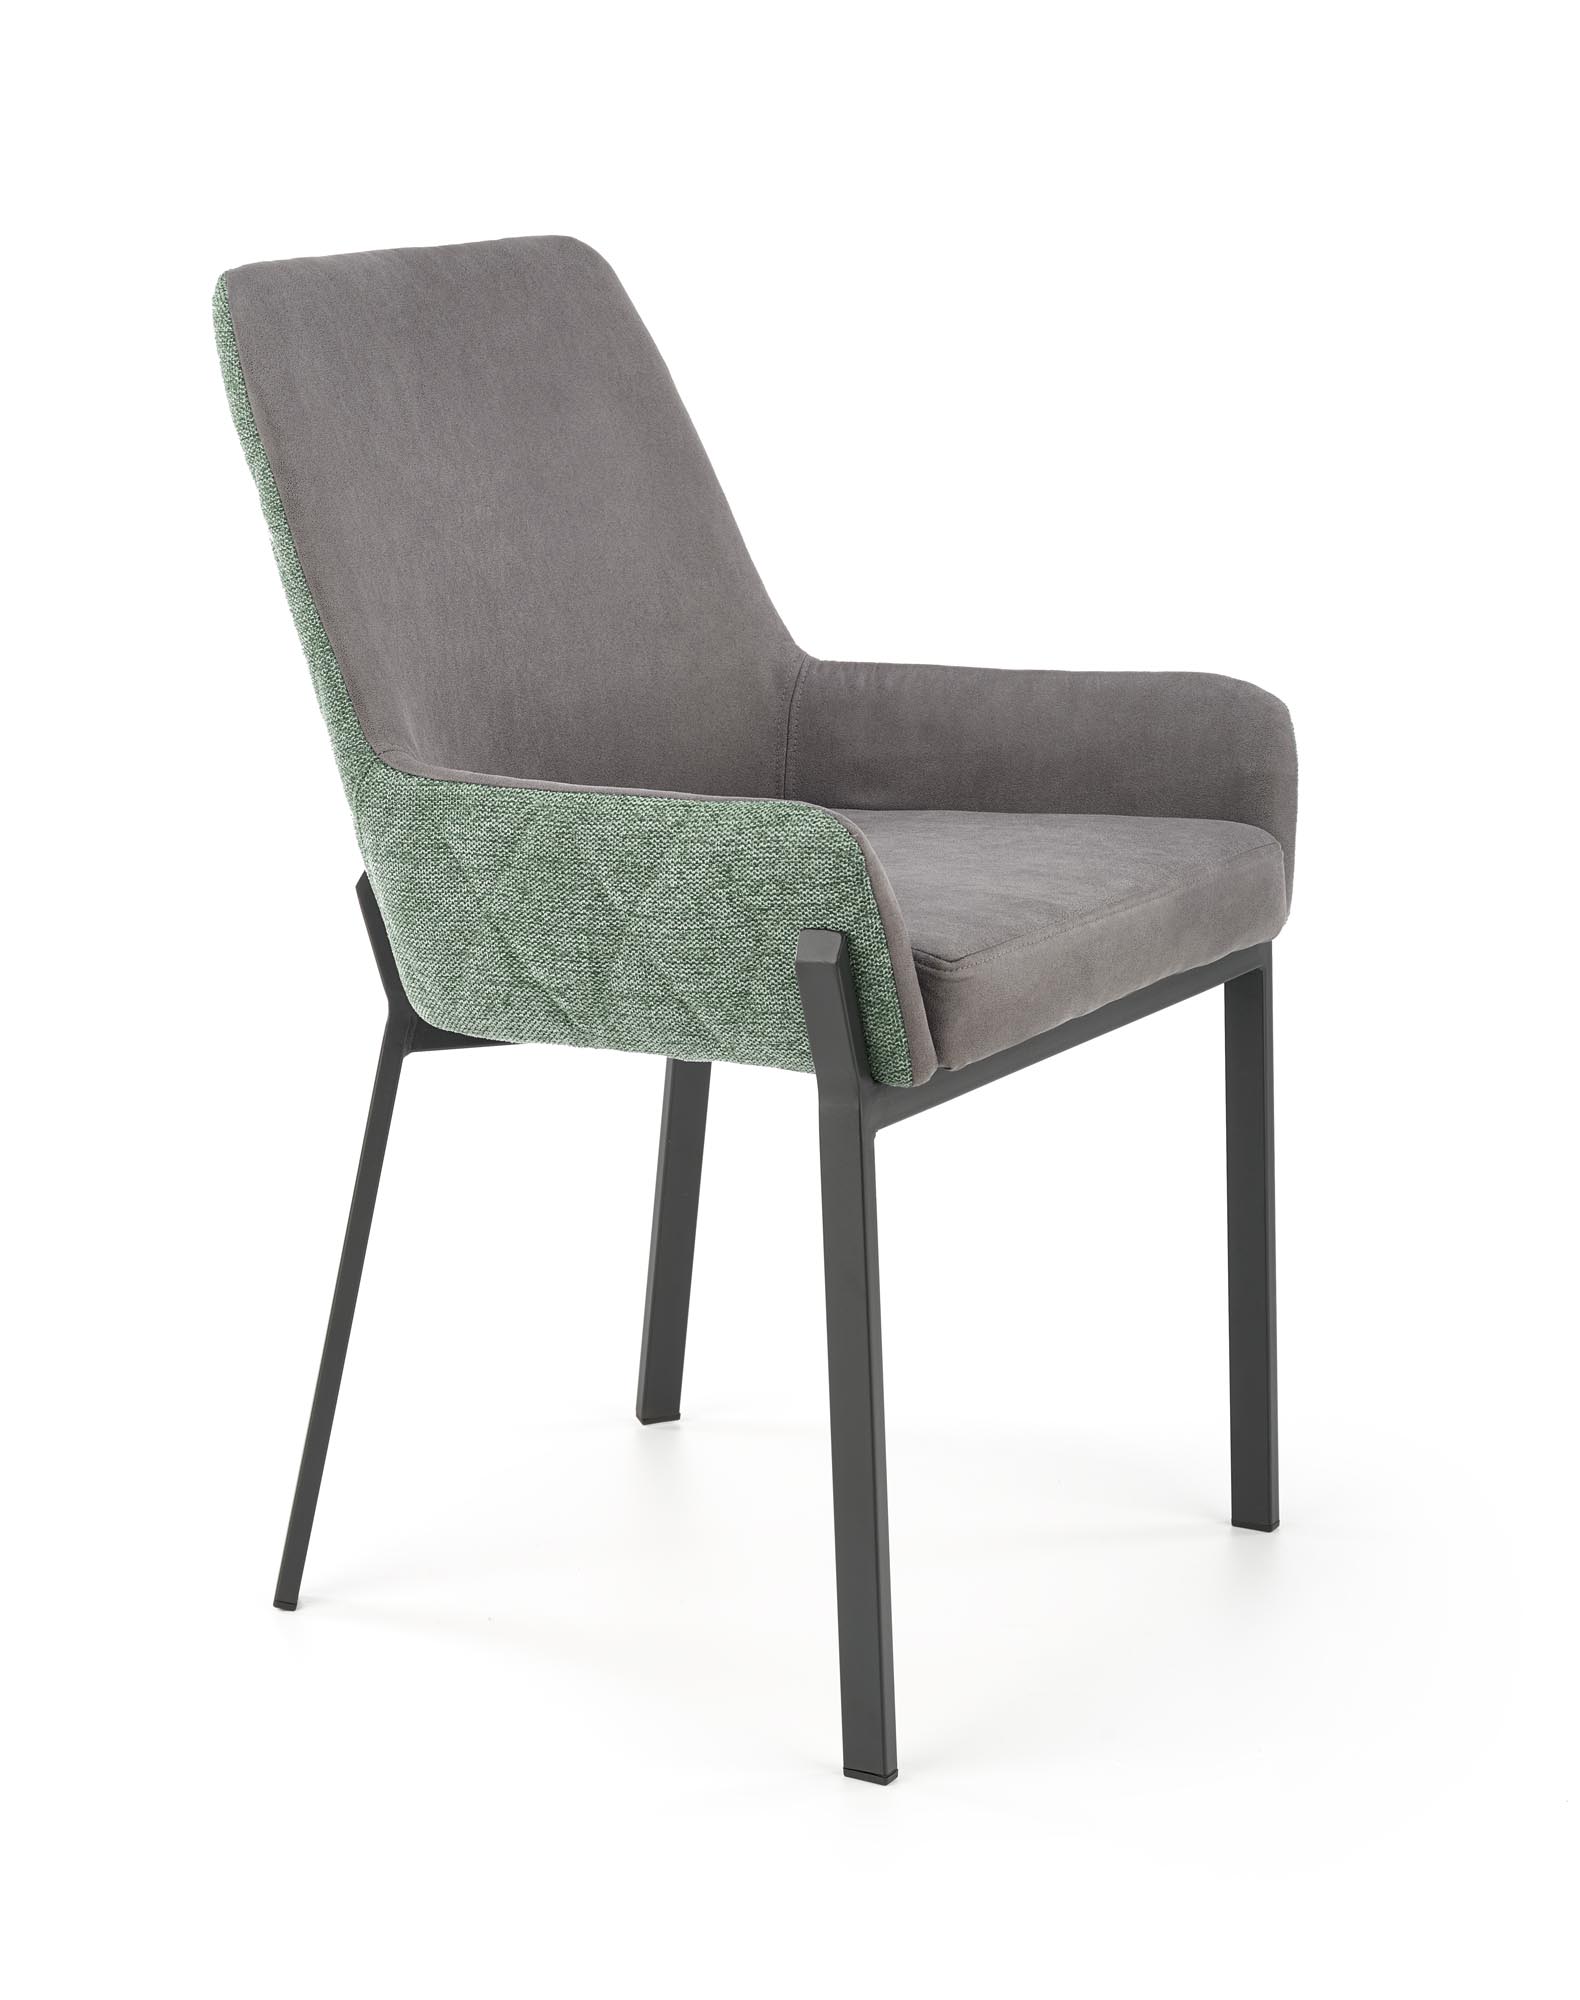 K439 stolica, boja: tamno siva / zelena